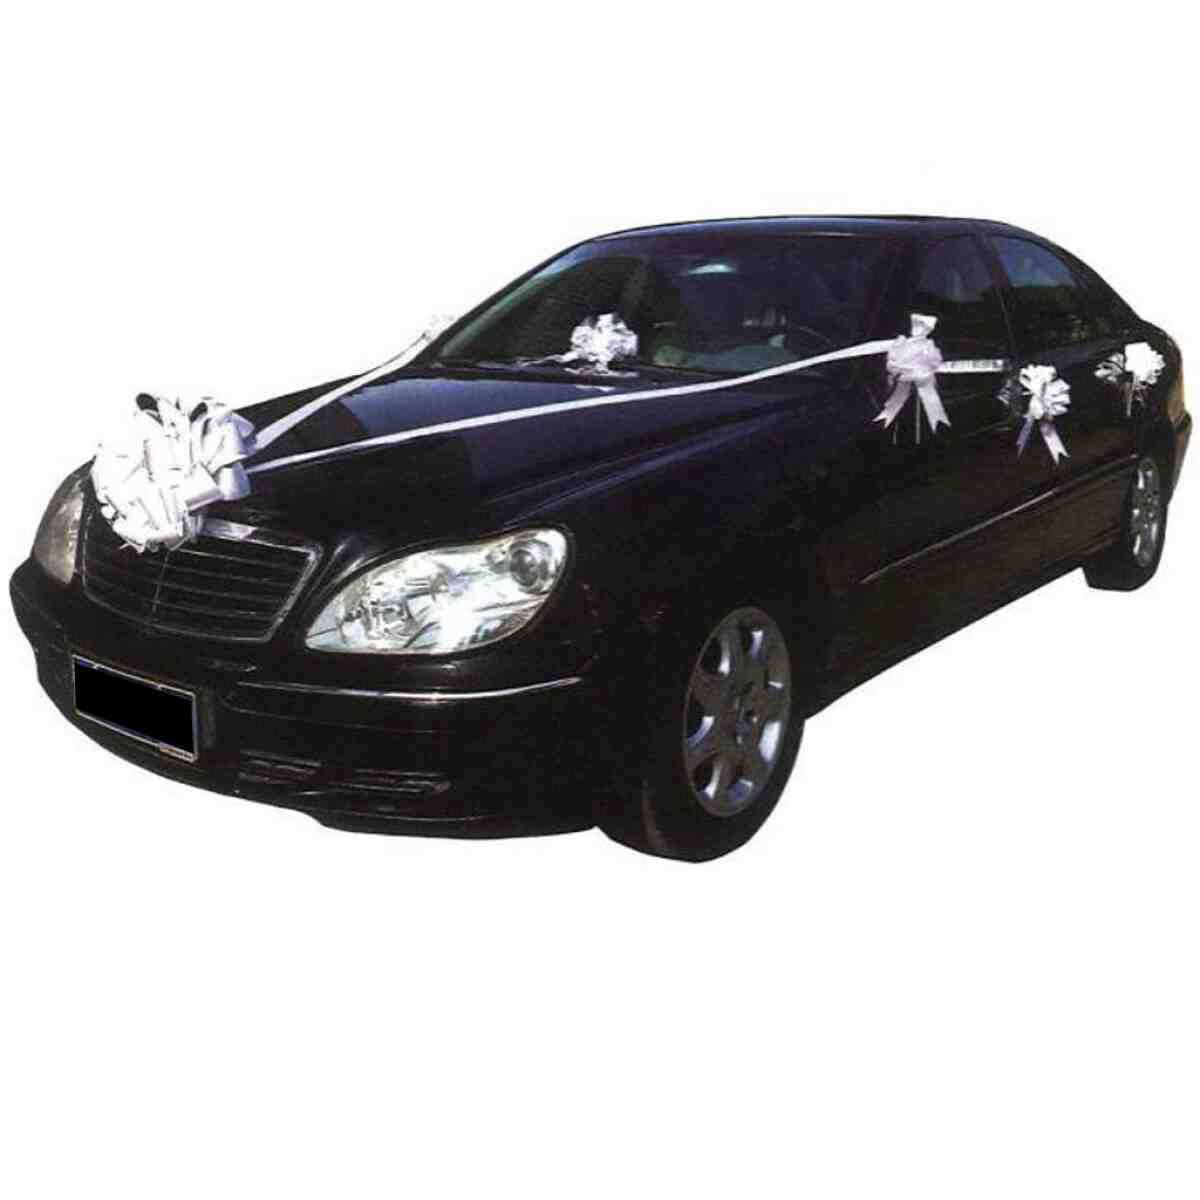 Comment décorer une voiture de mariage avec du tulle